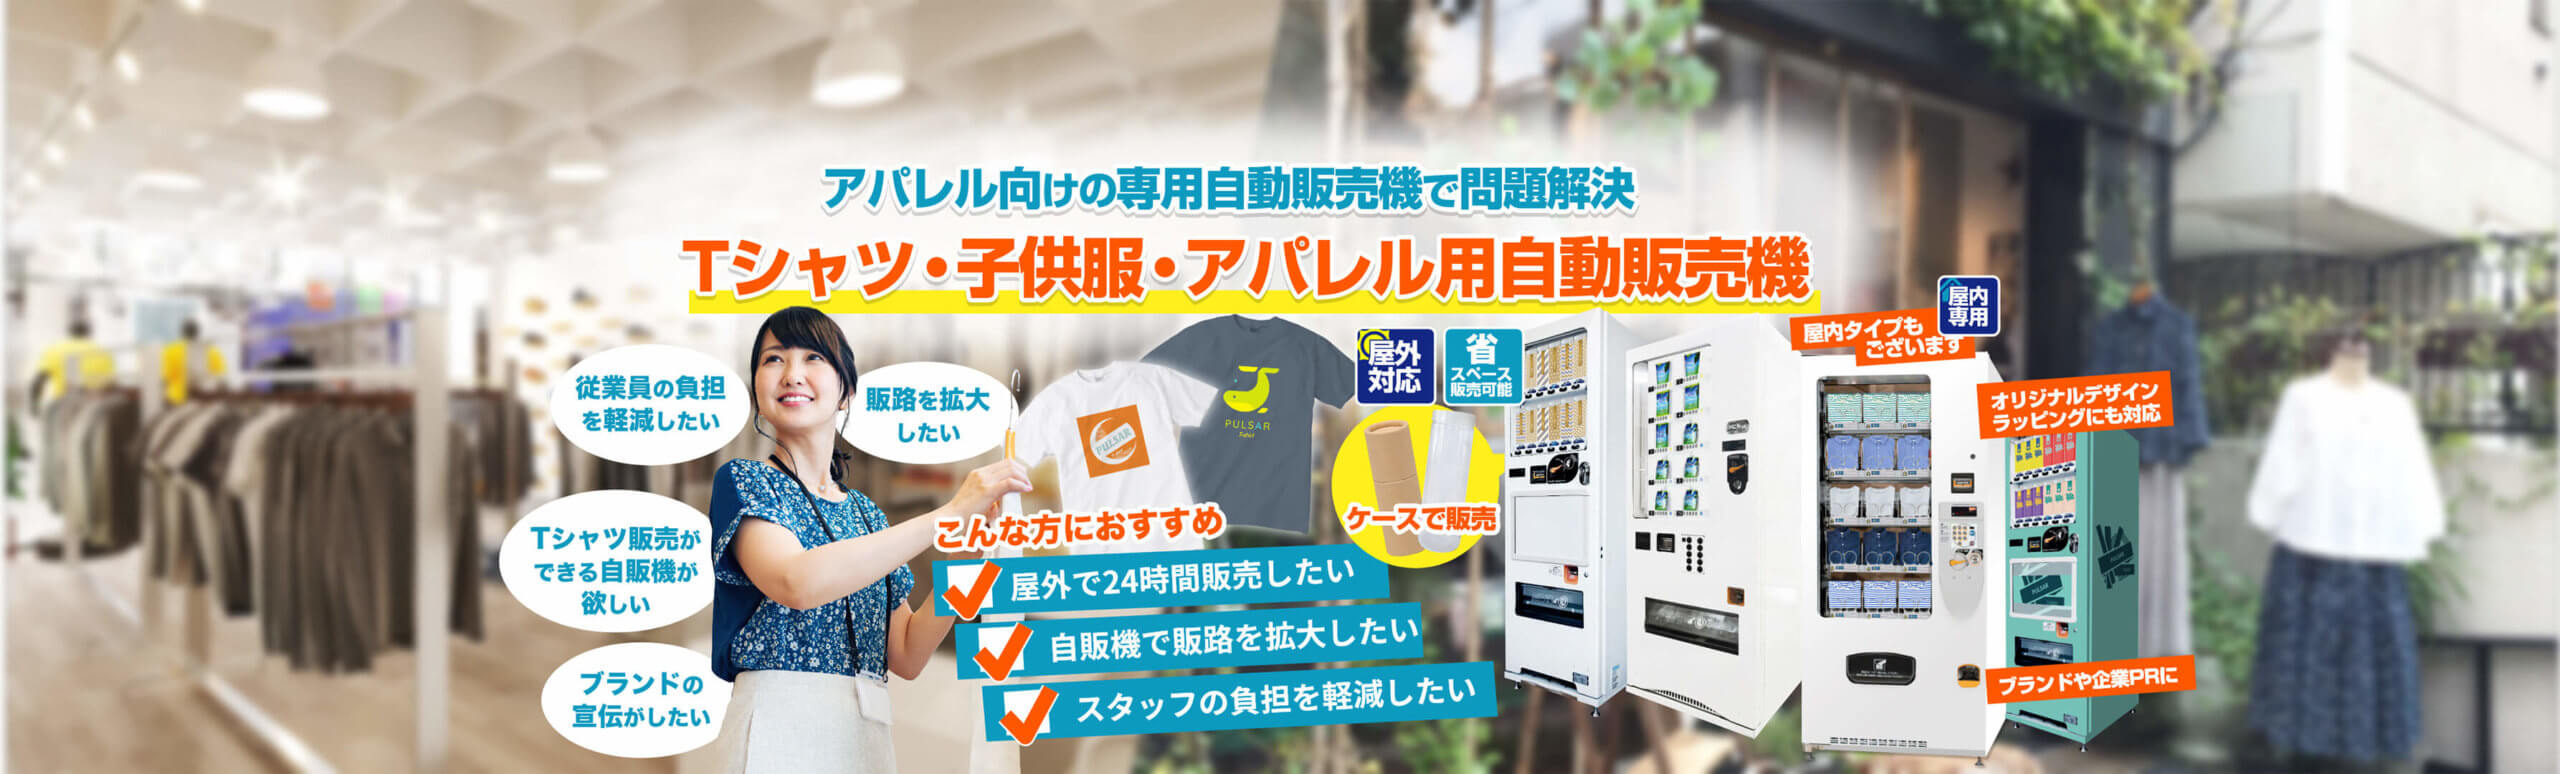 Tシャツ・子供服・アパレル用自動販売機